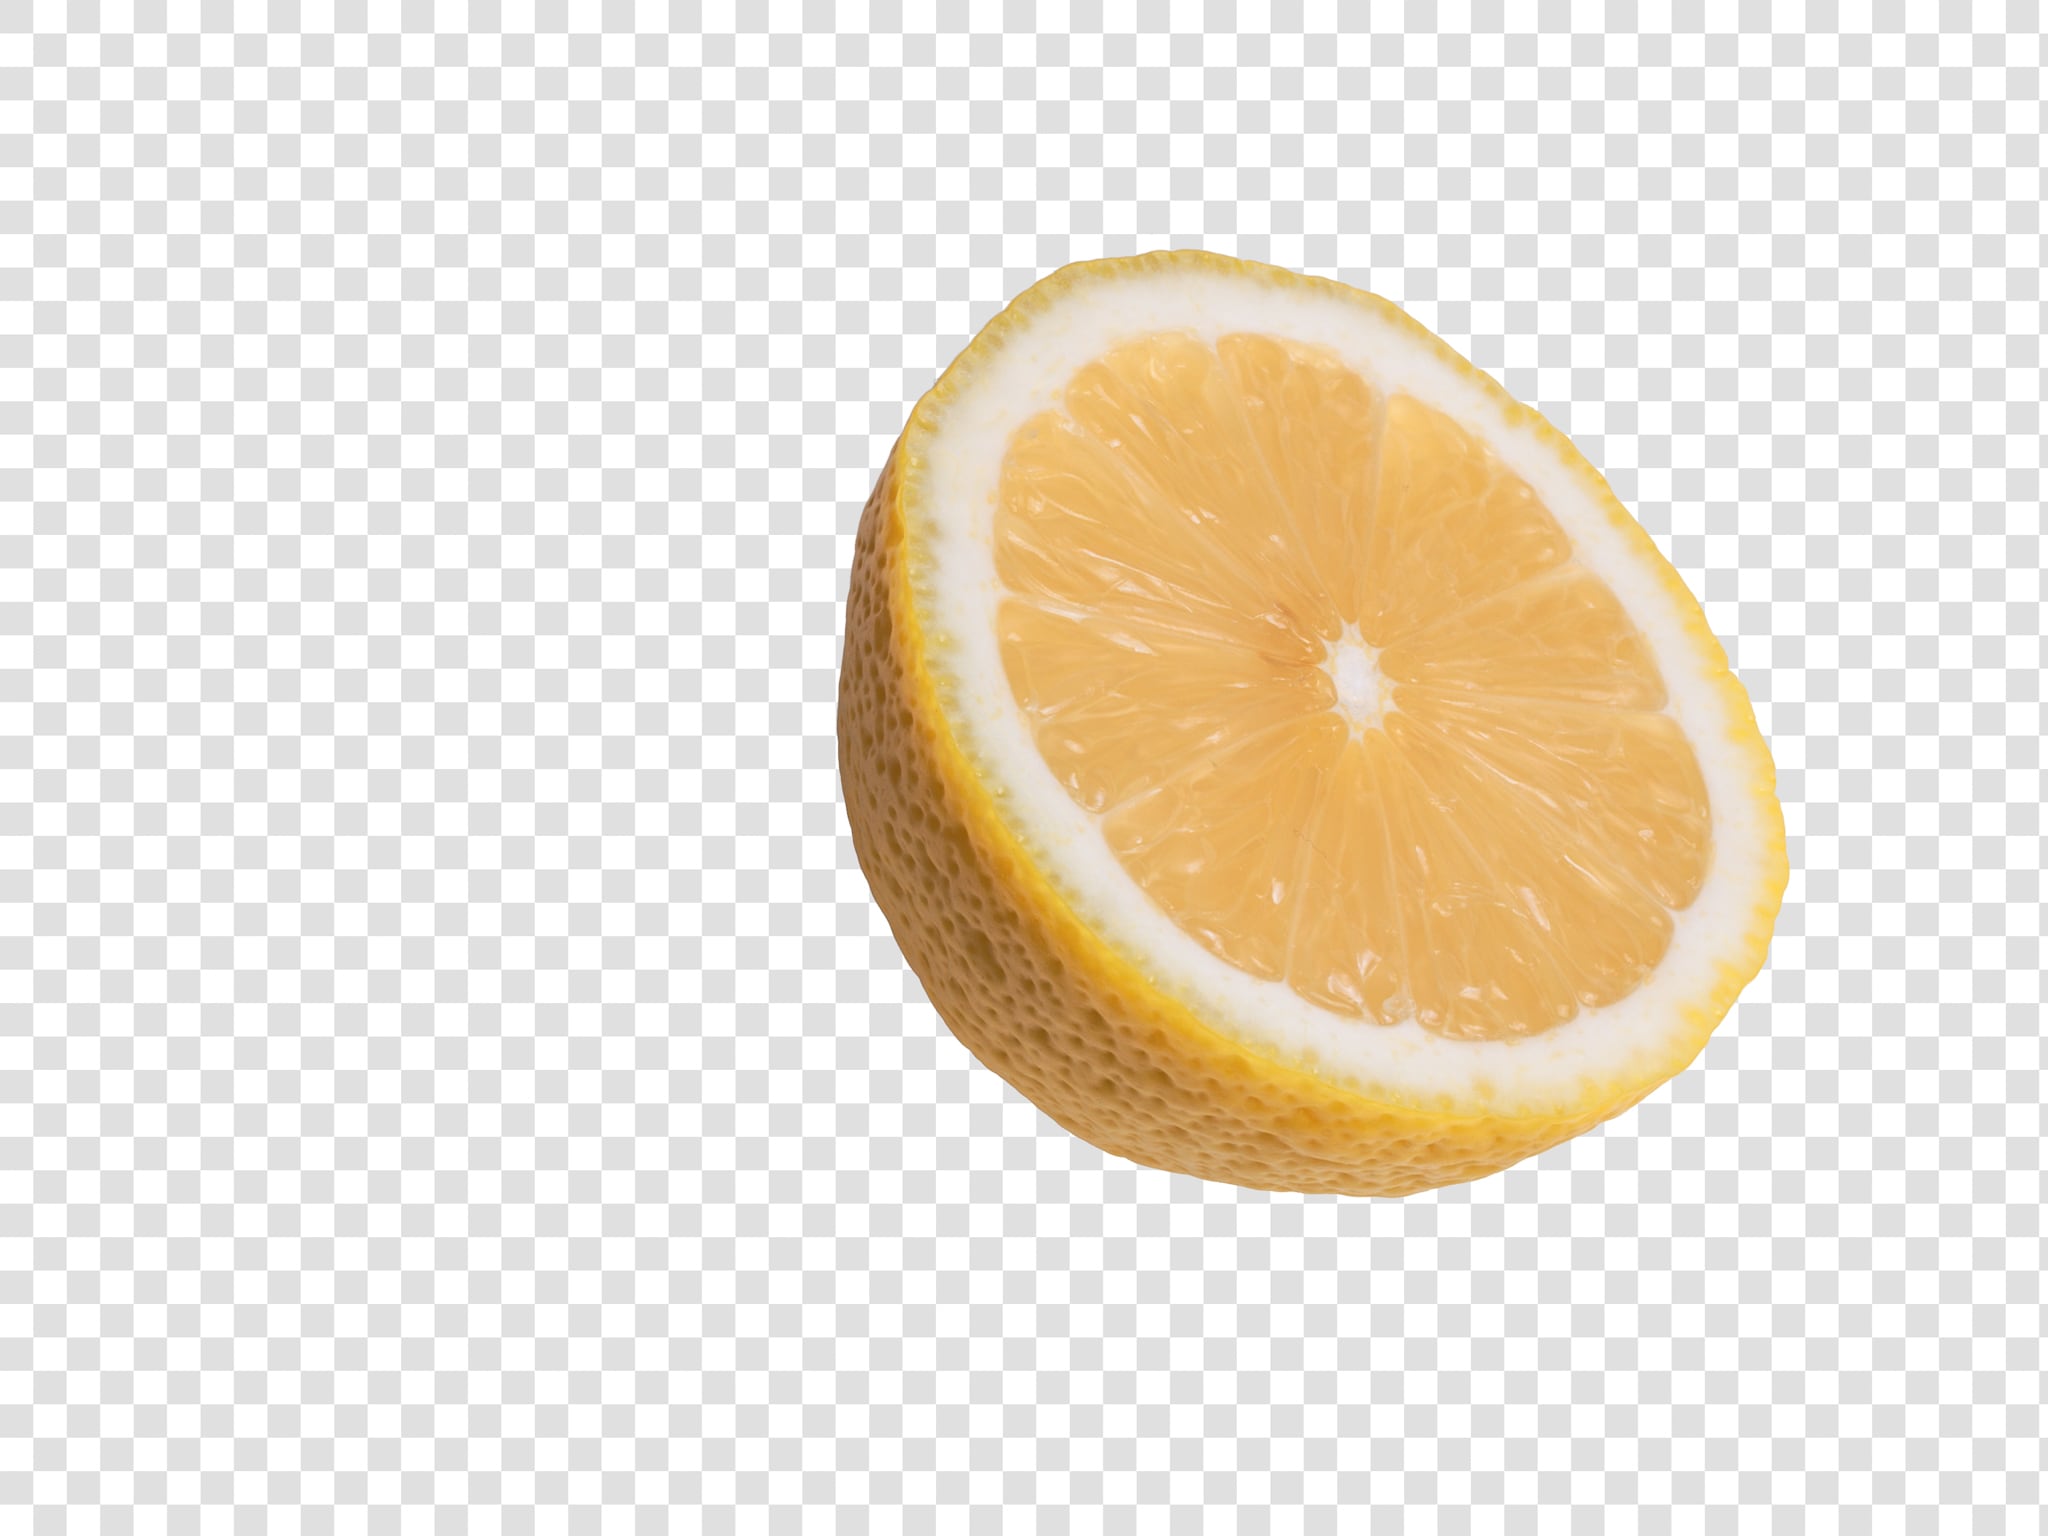 Lemon PSD isolated image